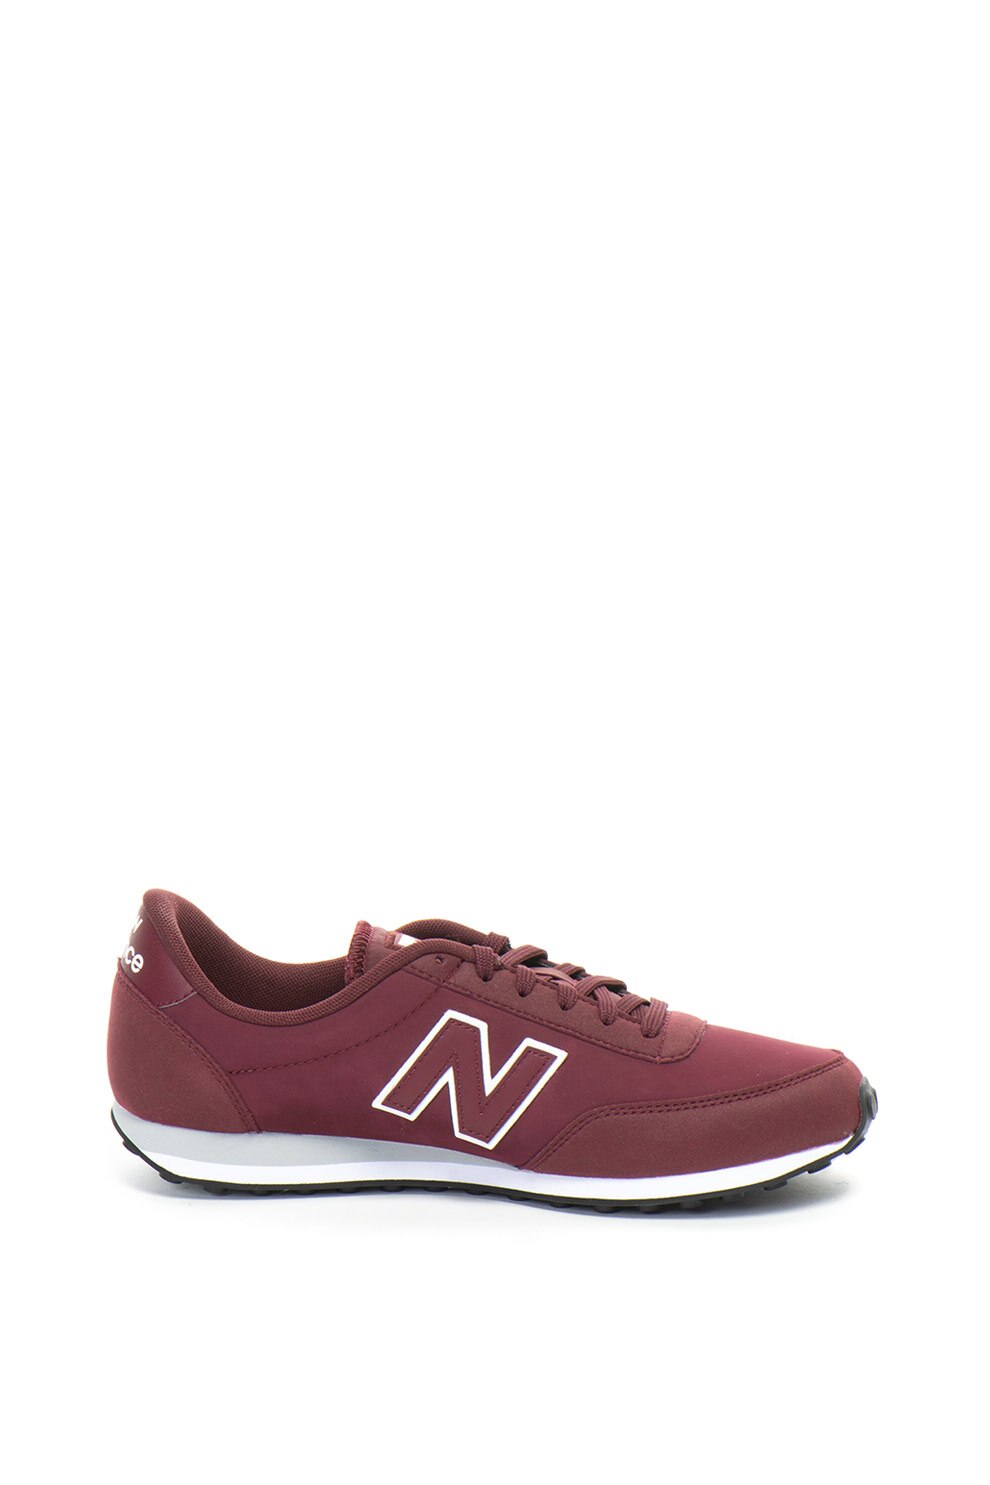 New Balance, 410 műbőr cipő, Bordó, 4 